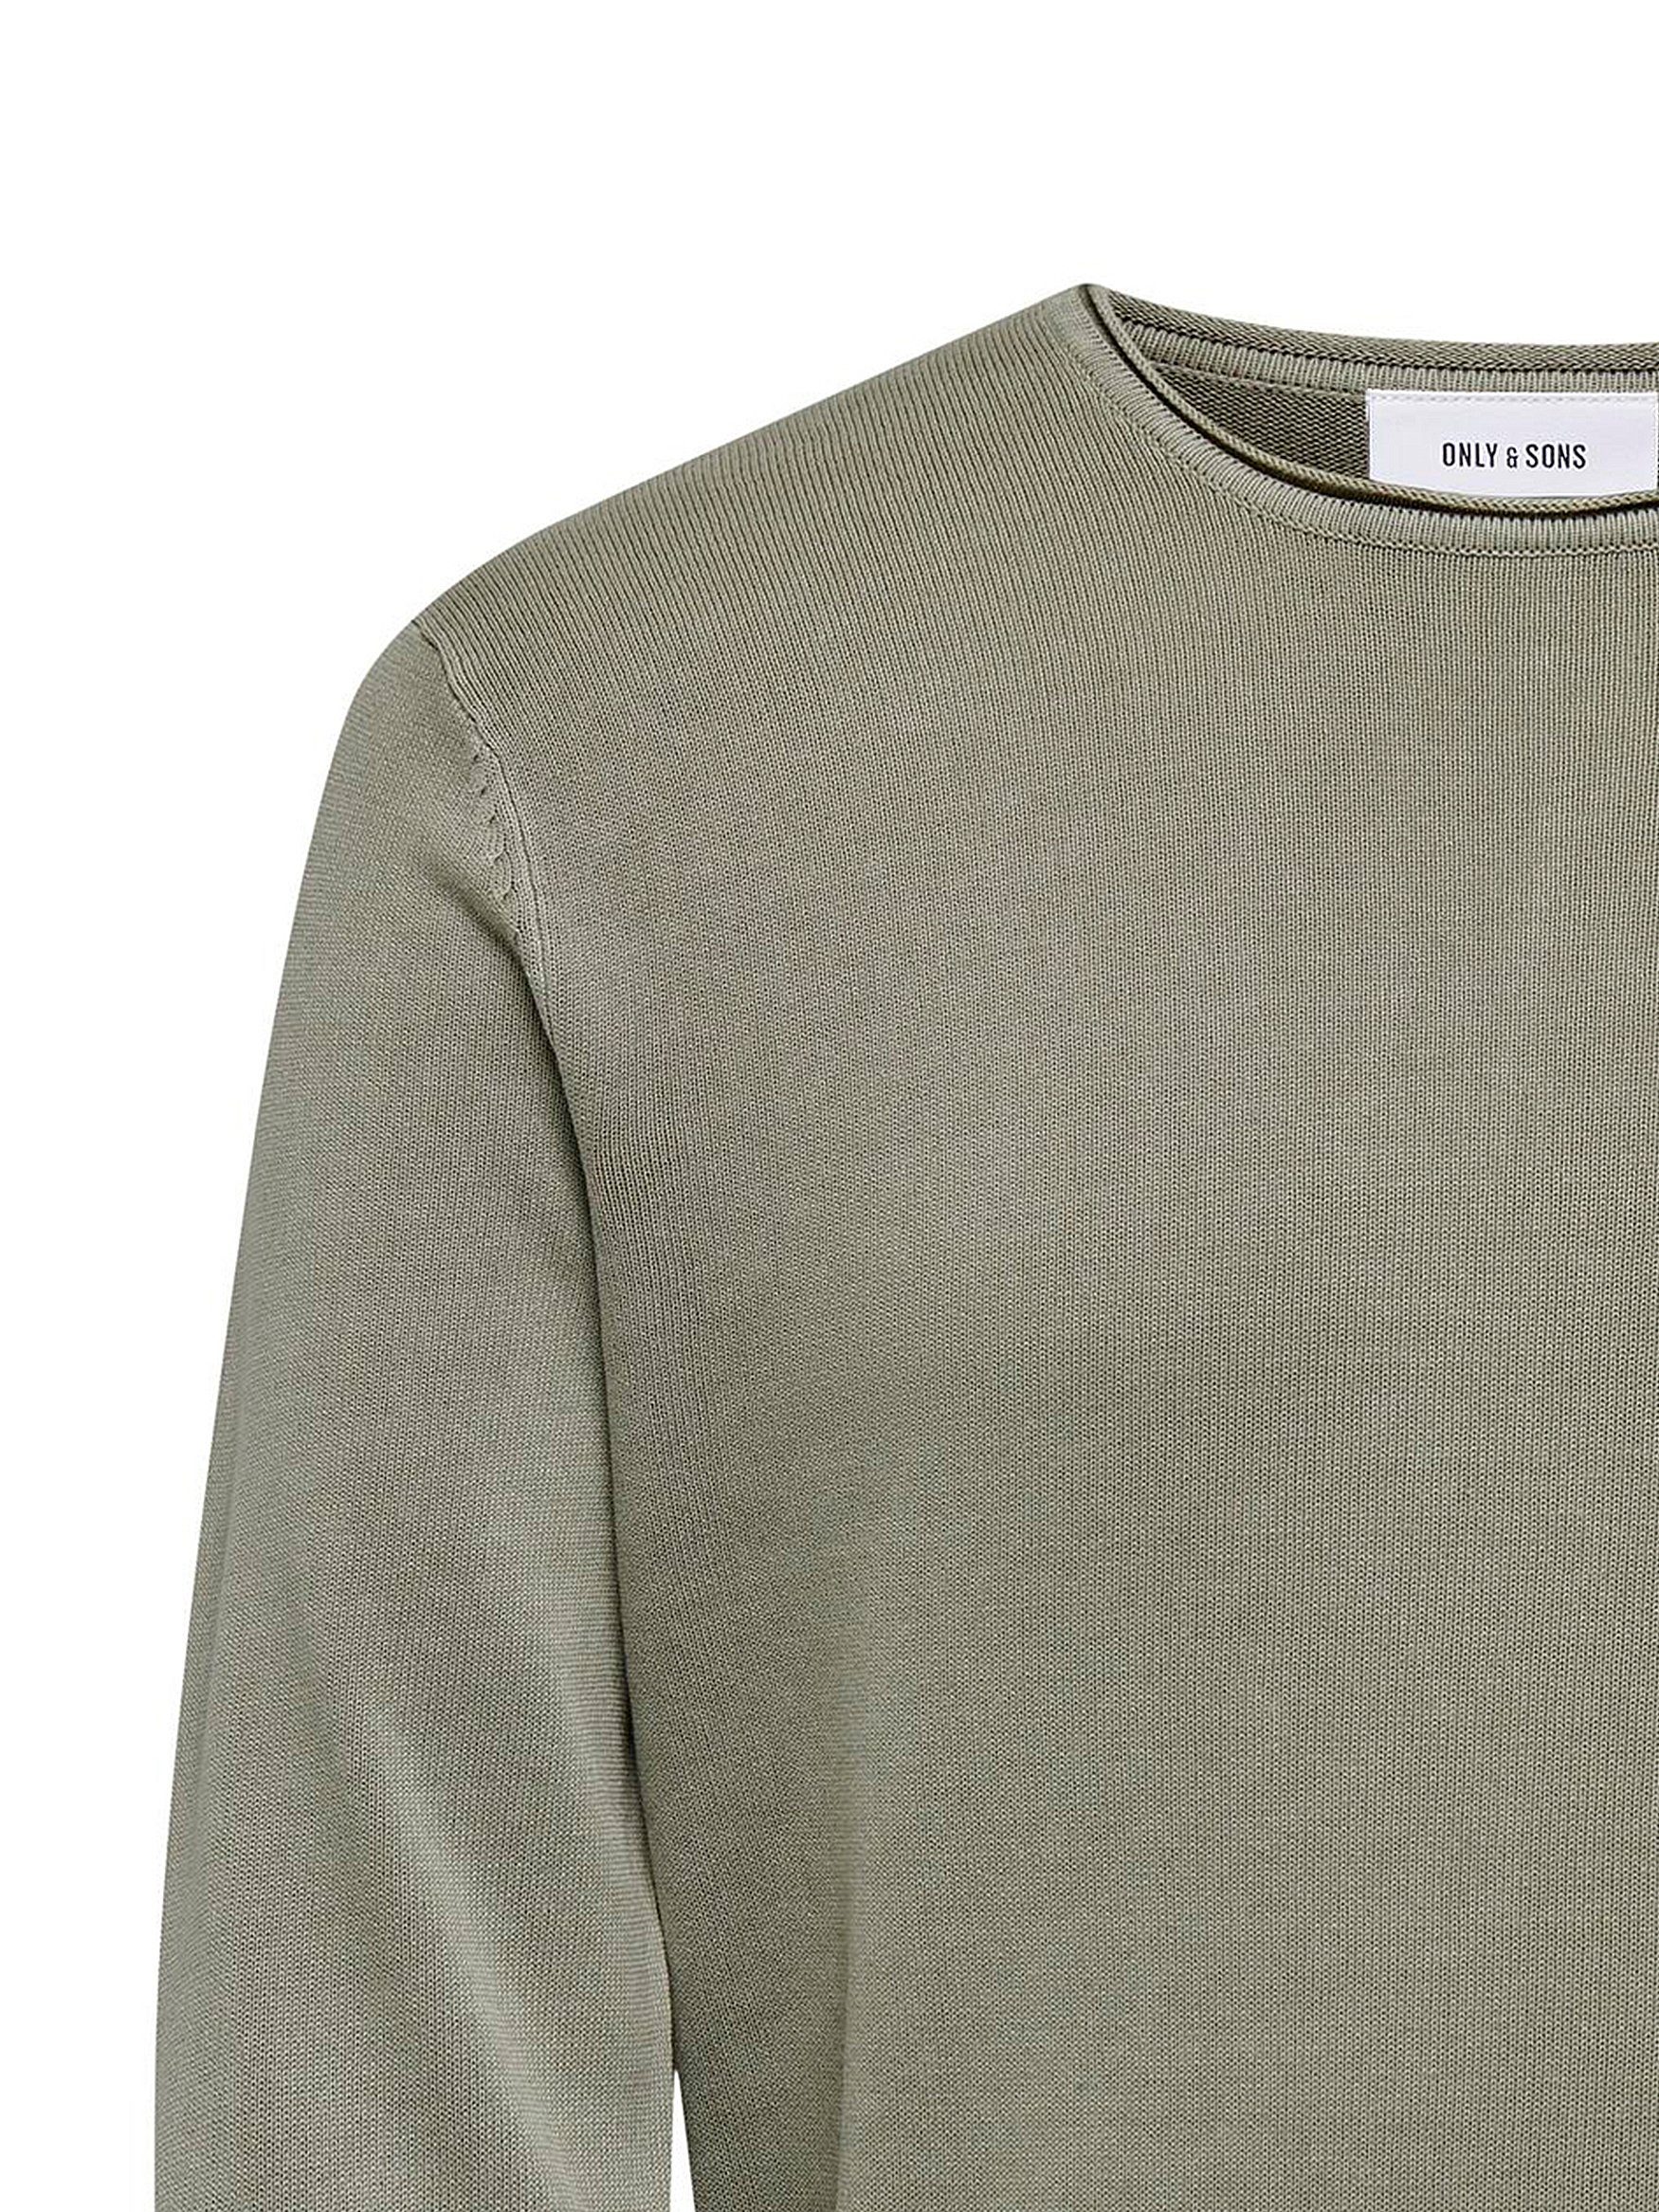 ONLY & SONS Strickpullover Rundhals Washed in Lässiger Feinstrick Design Schwarz-Weiß Pullover Sweater 6797